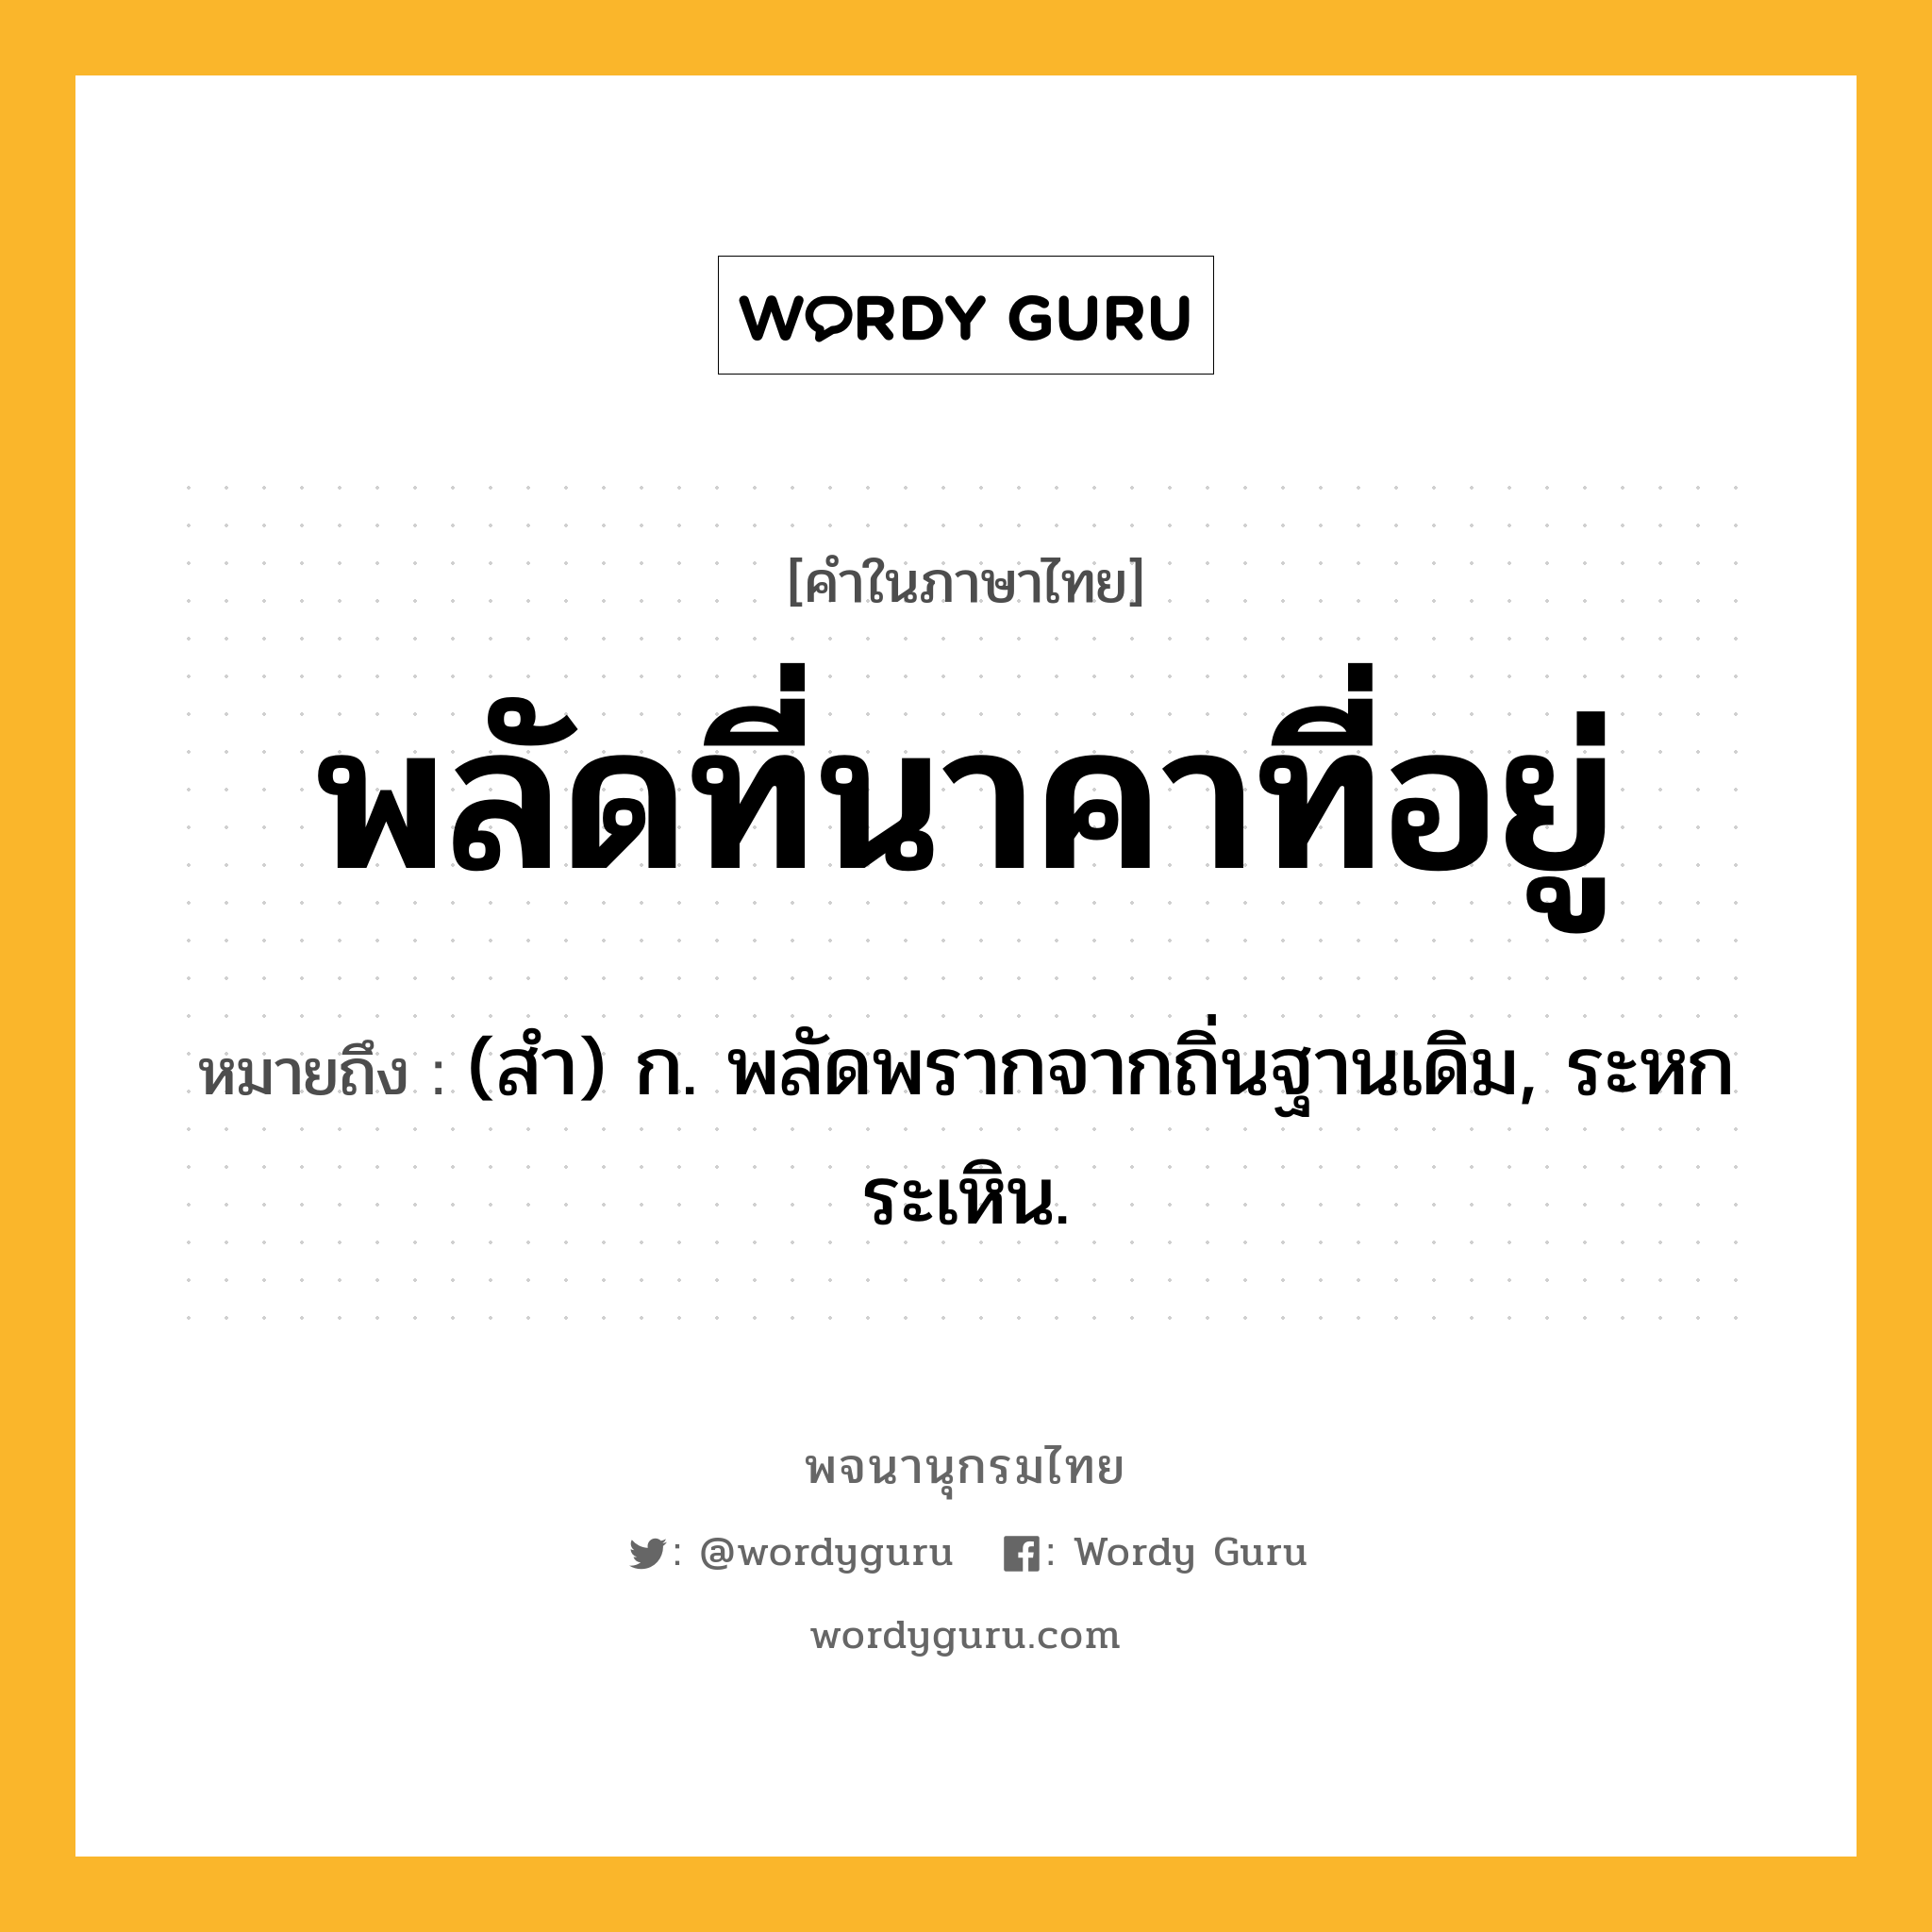 พลัดที่นาคาที่อยู่ ความหมาย หมายถึงอะไร?, คำในภาษาไทย พลัดที่นาคาที่อยู่ หมายถึง (สํา) ก. พลัดพรากจากถิ่นฐานเดิม, ระหกระเหิน.